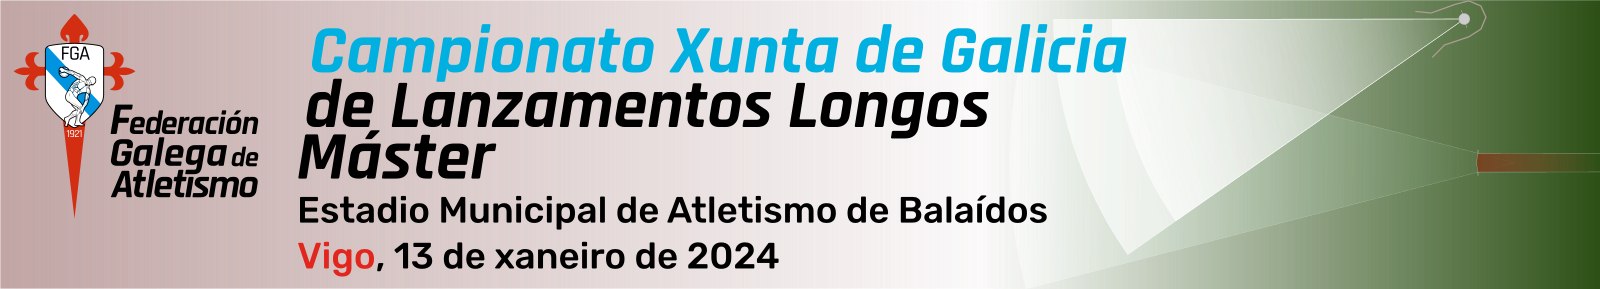  Campionato Xunta de Galicia de.  Estadio Municipal de Atletismo de Balaídos, 13 xaneiro 2024